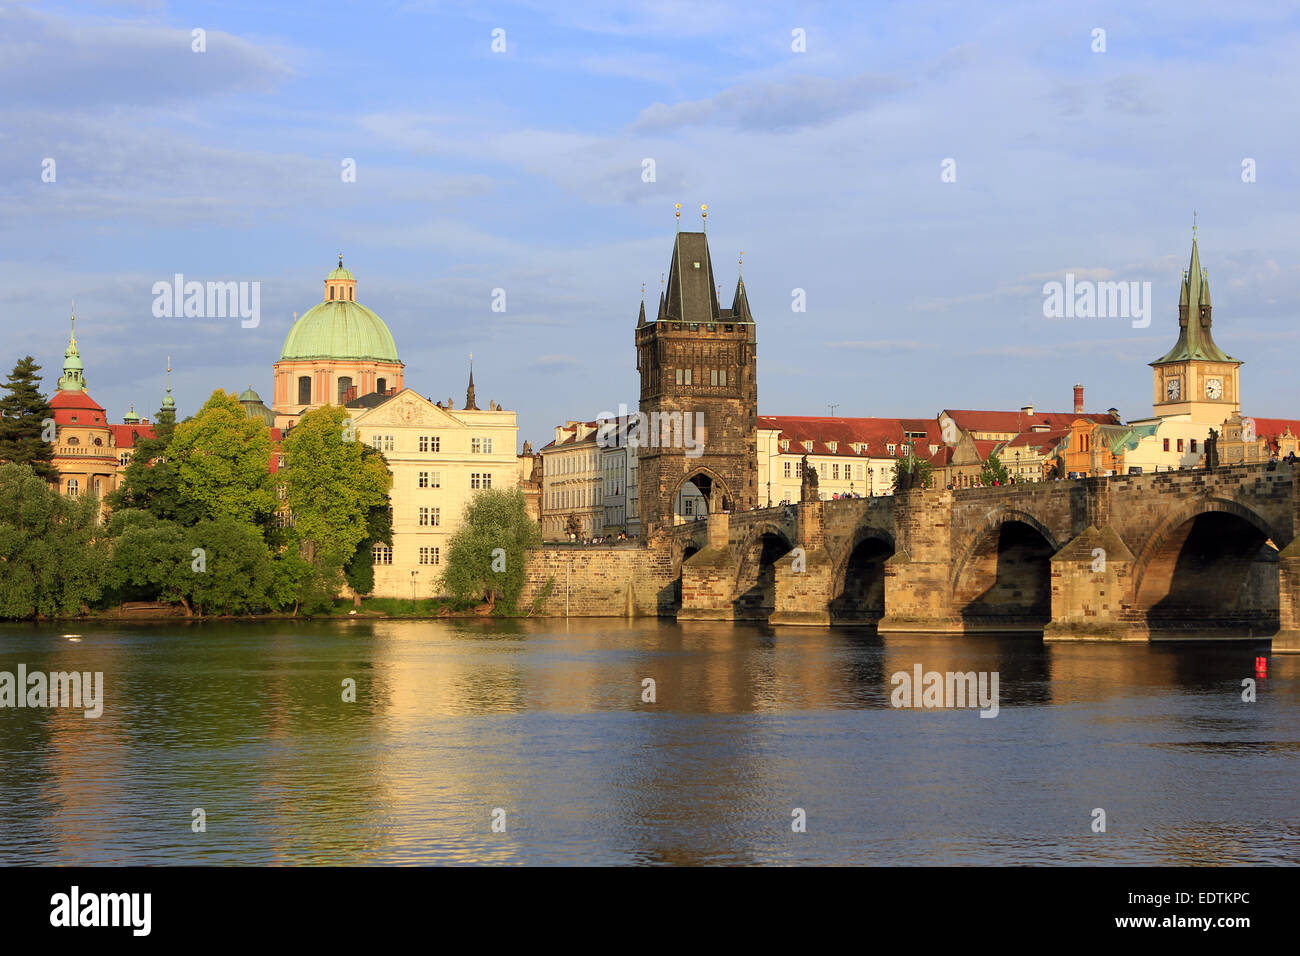 Tschechische Republik, Prag, Blick auf die Karlsbrücke an der Moldau, mit dem Altstädter Brückenturm,Czech Republic, Prague, vie Stock Photo